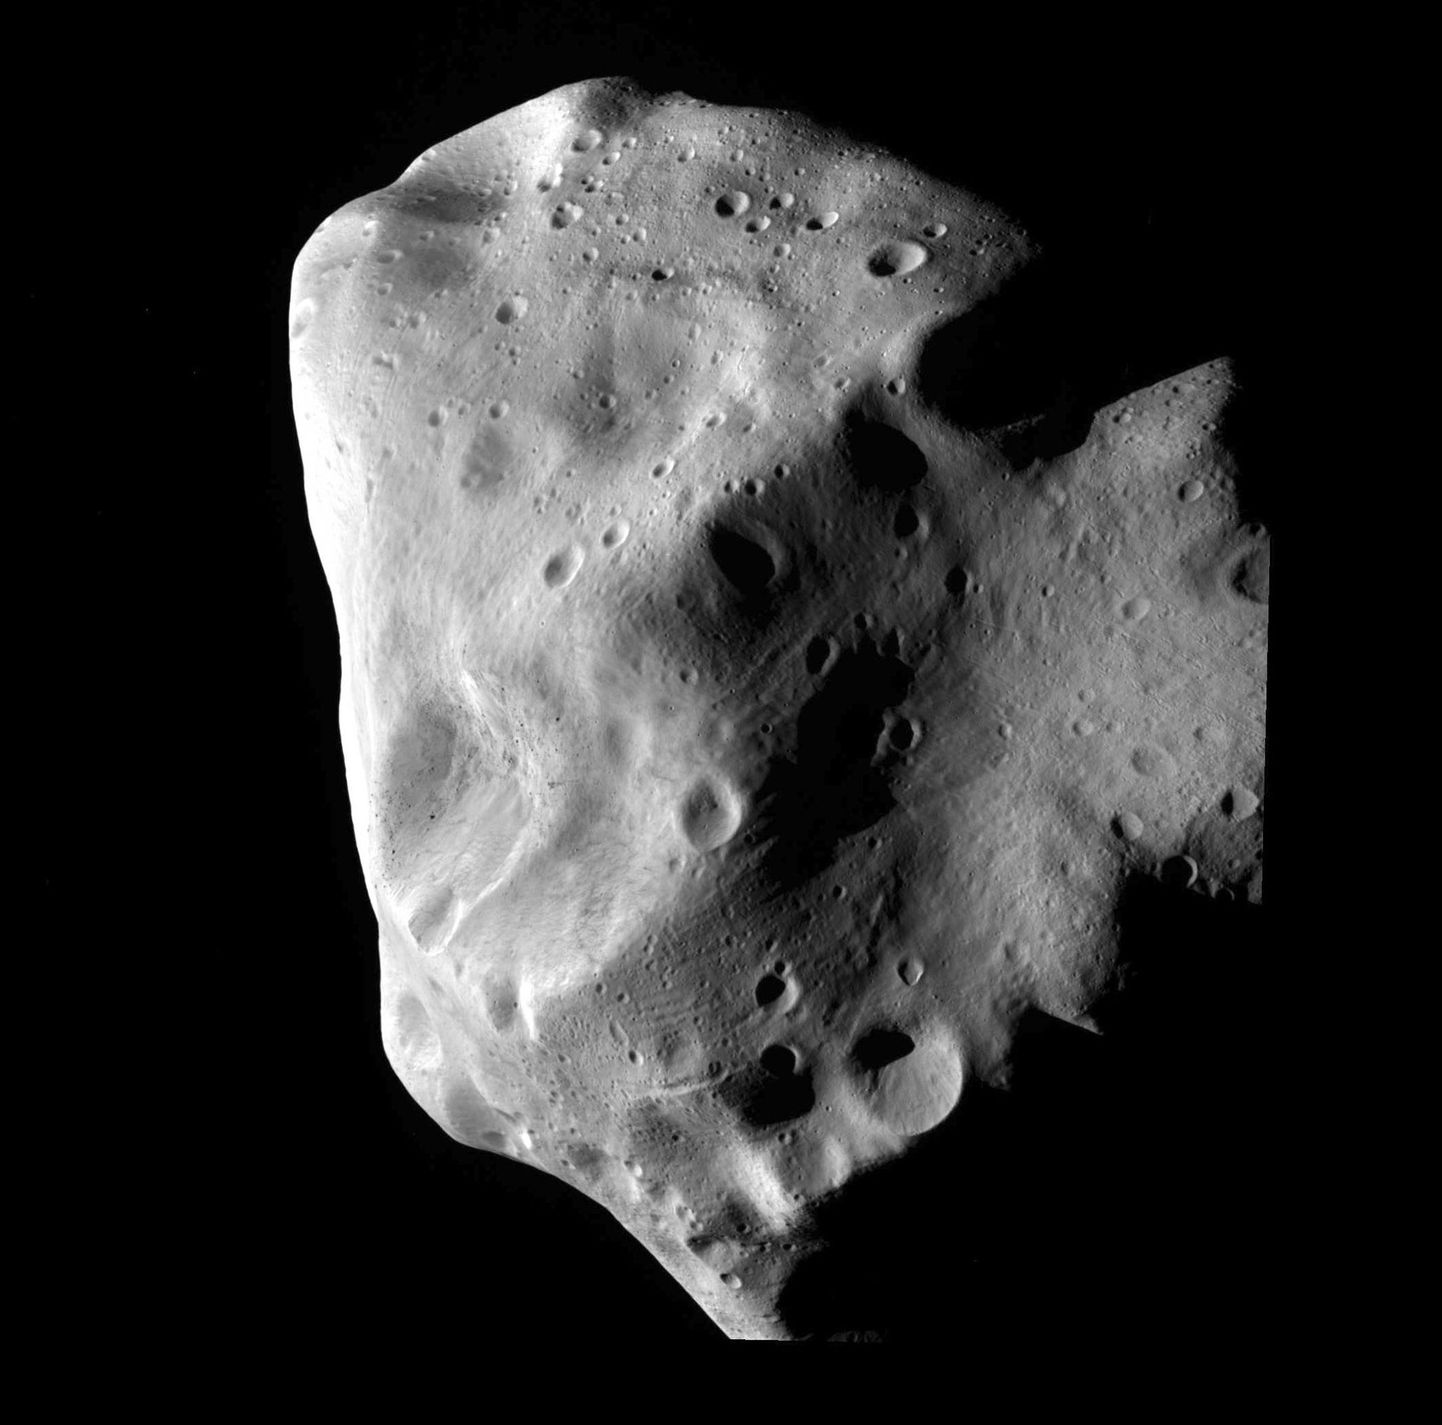 Novembris möödub Maast asteroid YU 55